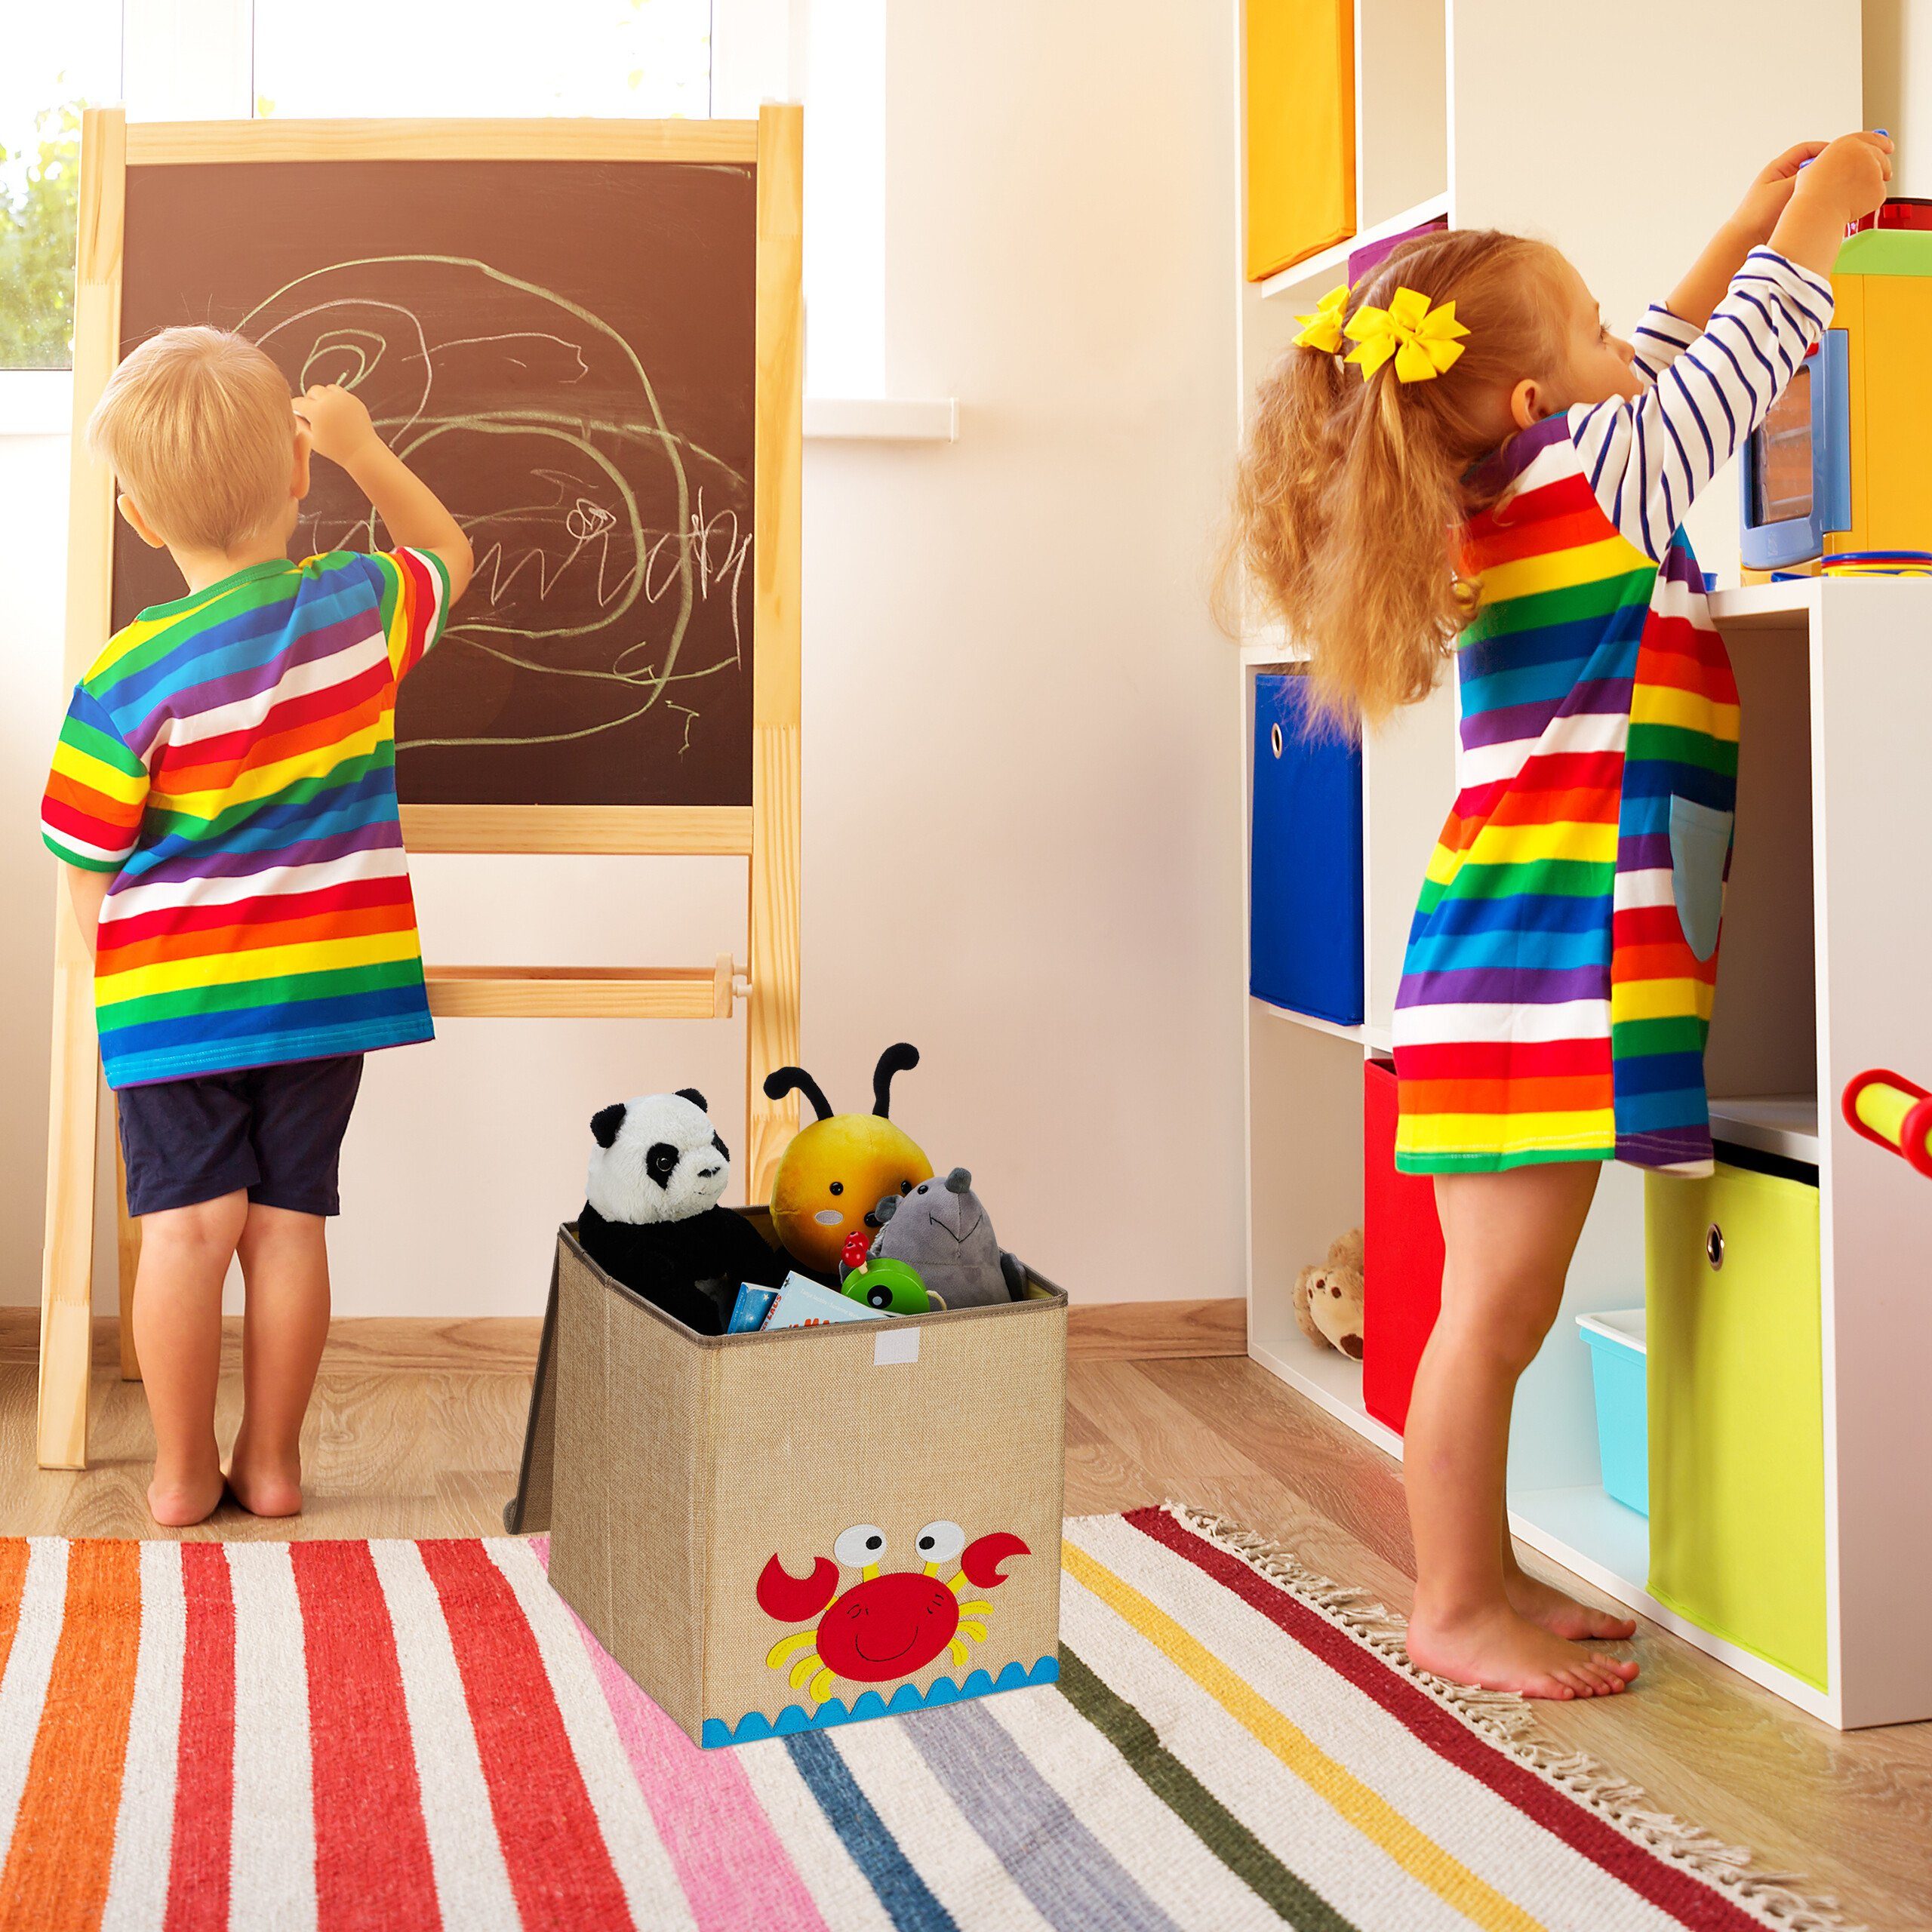 relaxdays Aufbewahrungsbox Aufbewahrungsbox für Kinder, Gelb Lila Beige Igel